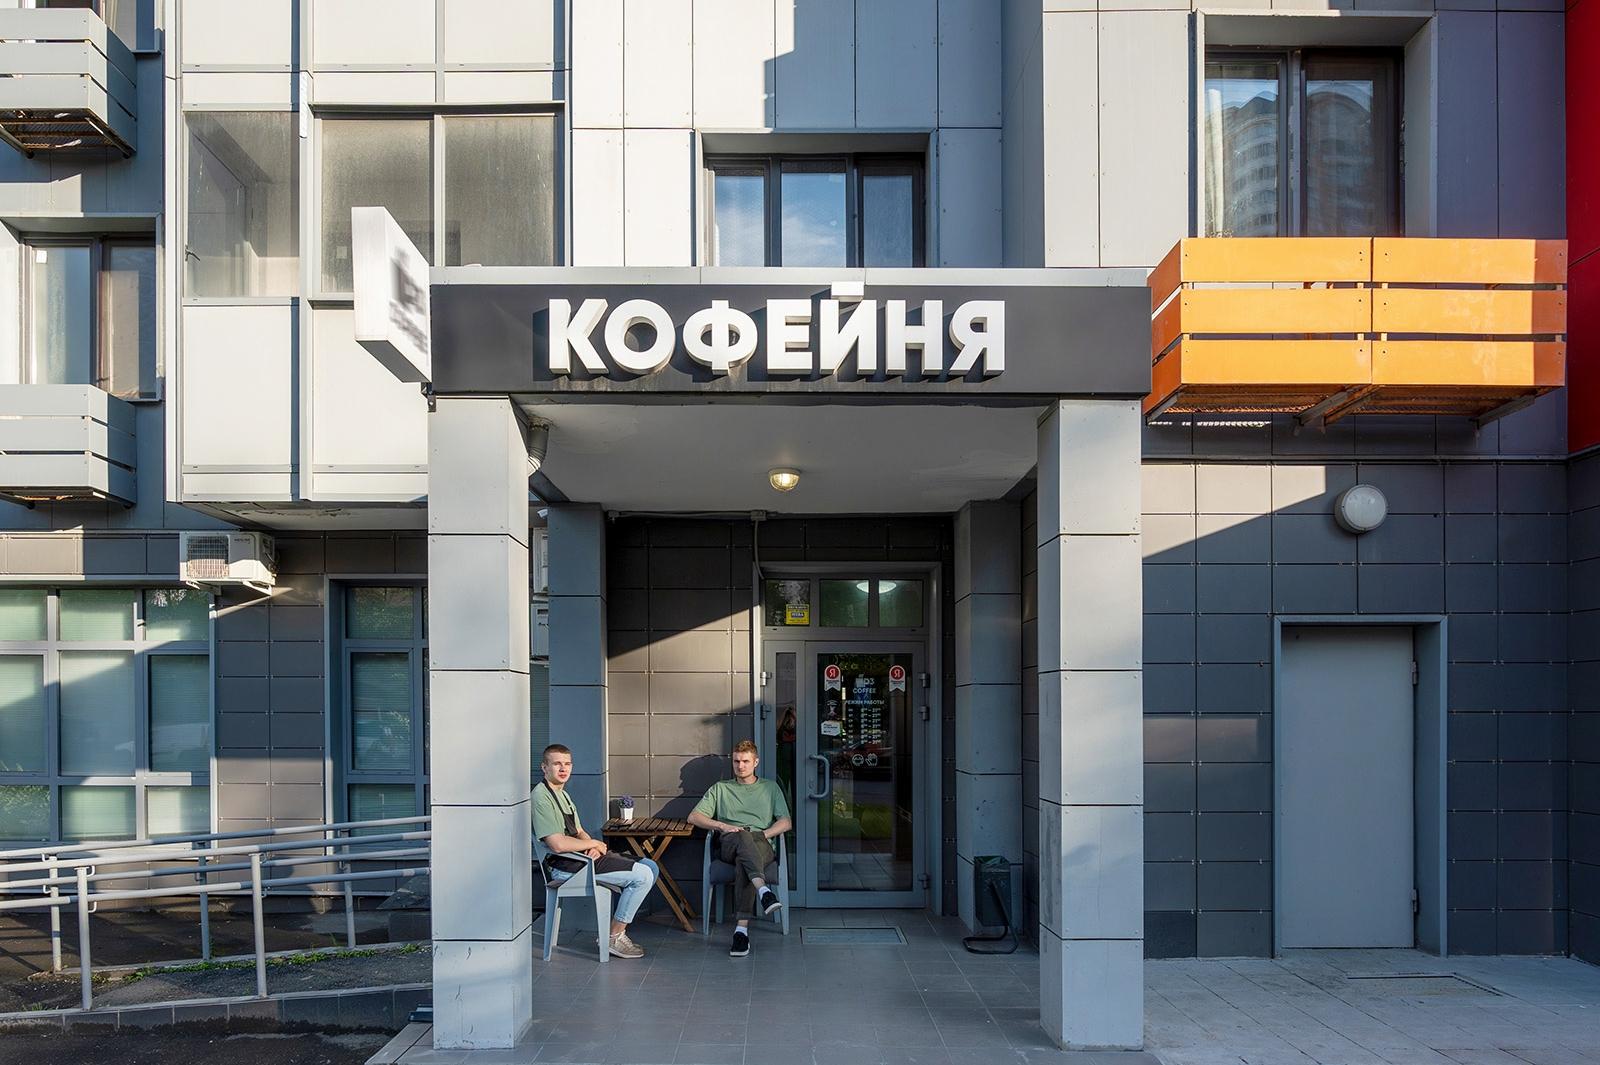 Около 90% нежилых помещений в новостройках реновации на Севере Москвы заняты бизнесом